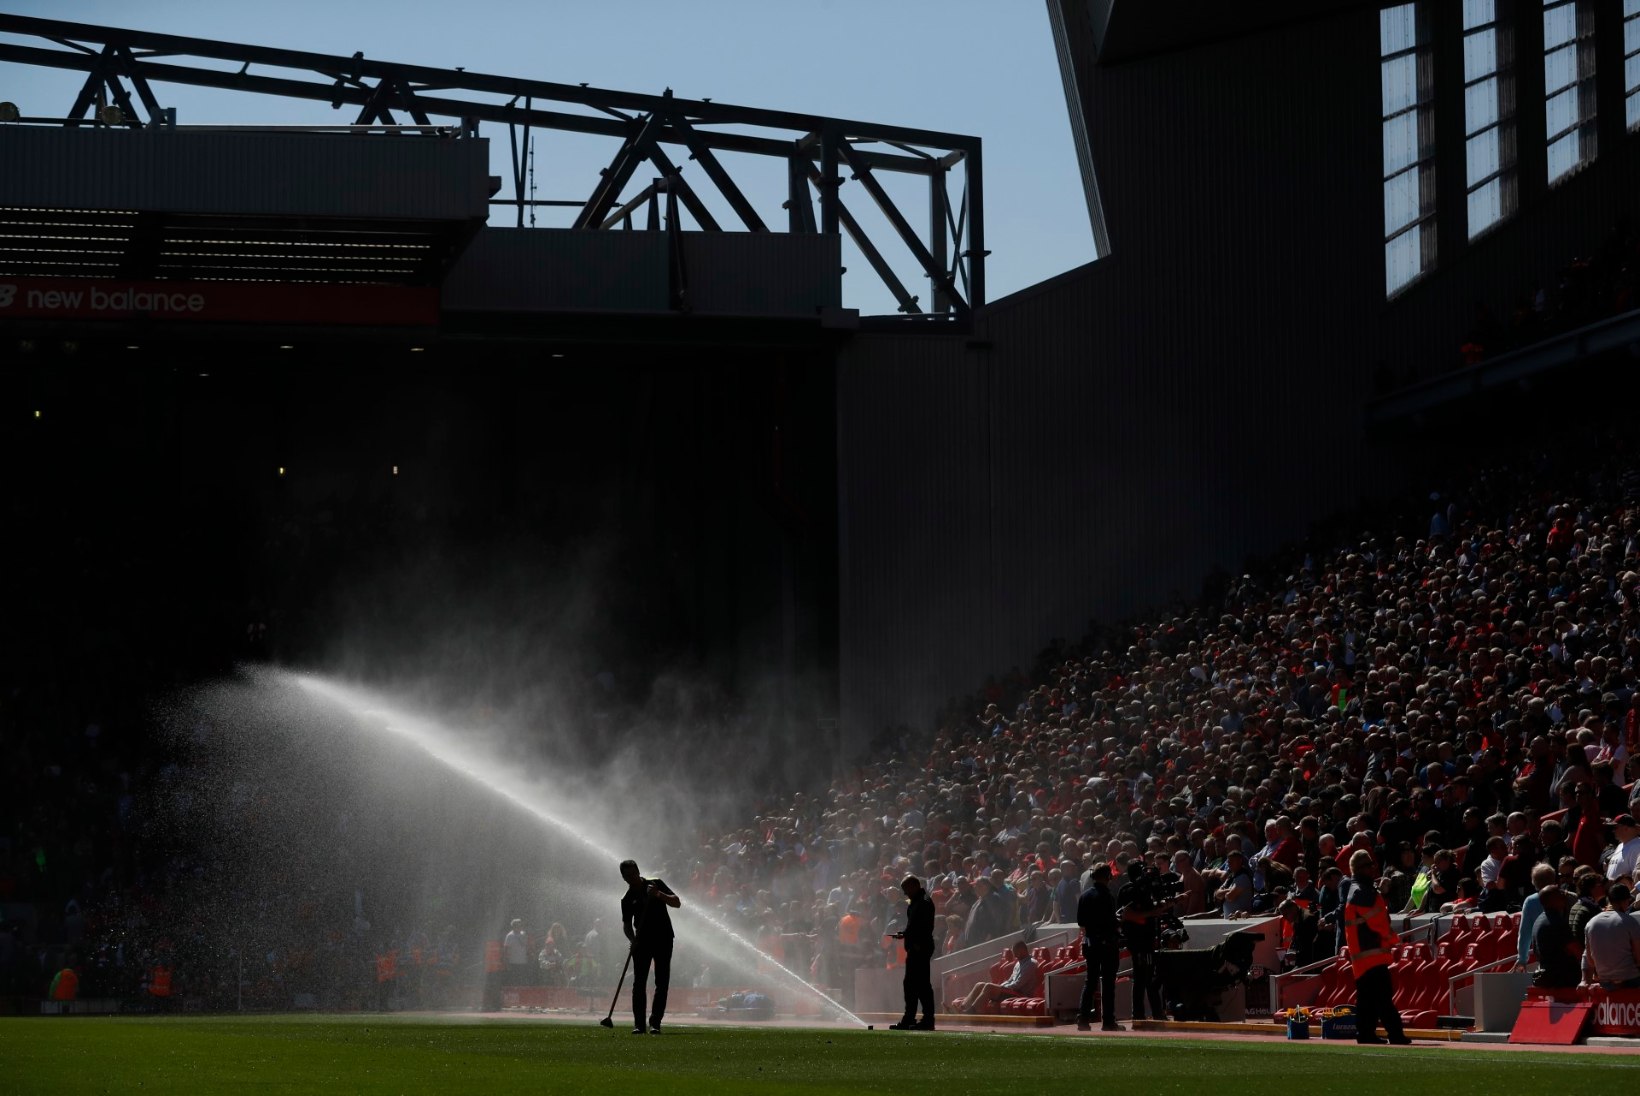 FOTOD | Liverpooli koduväljak sai algavaks hooajaks uue kuue